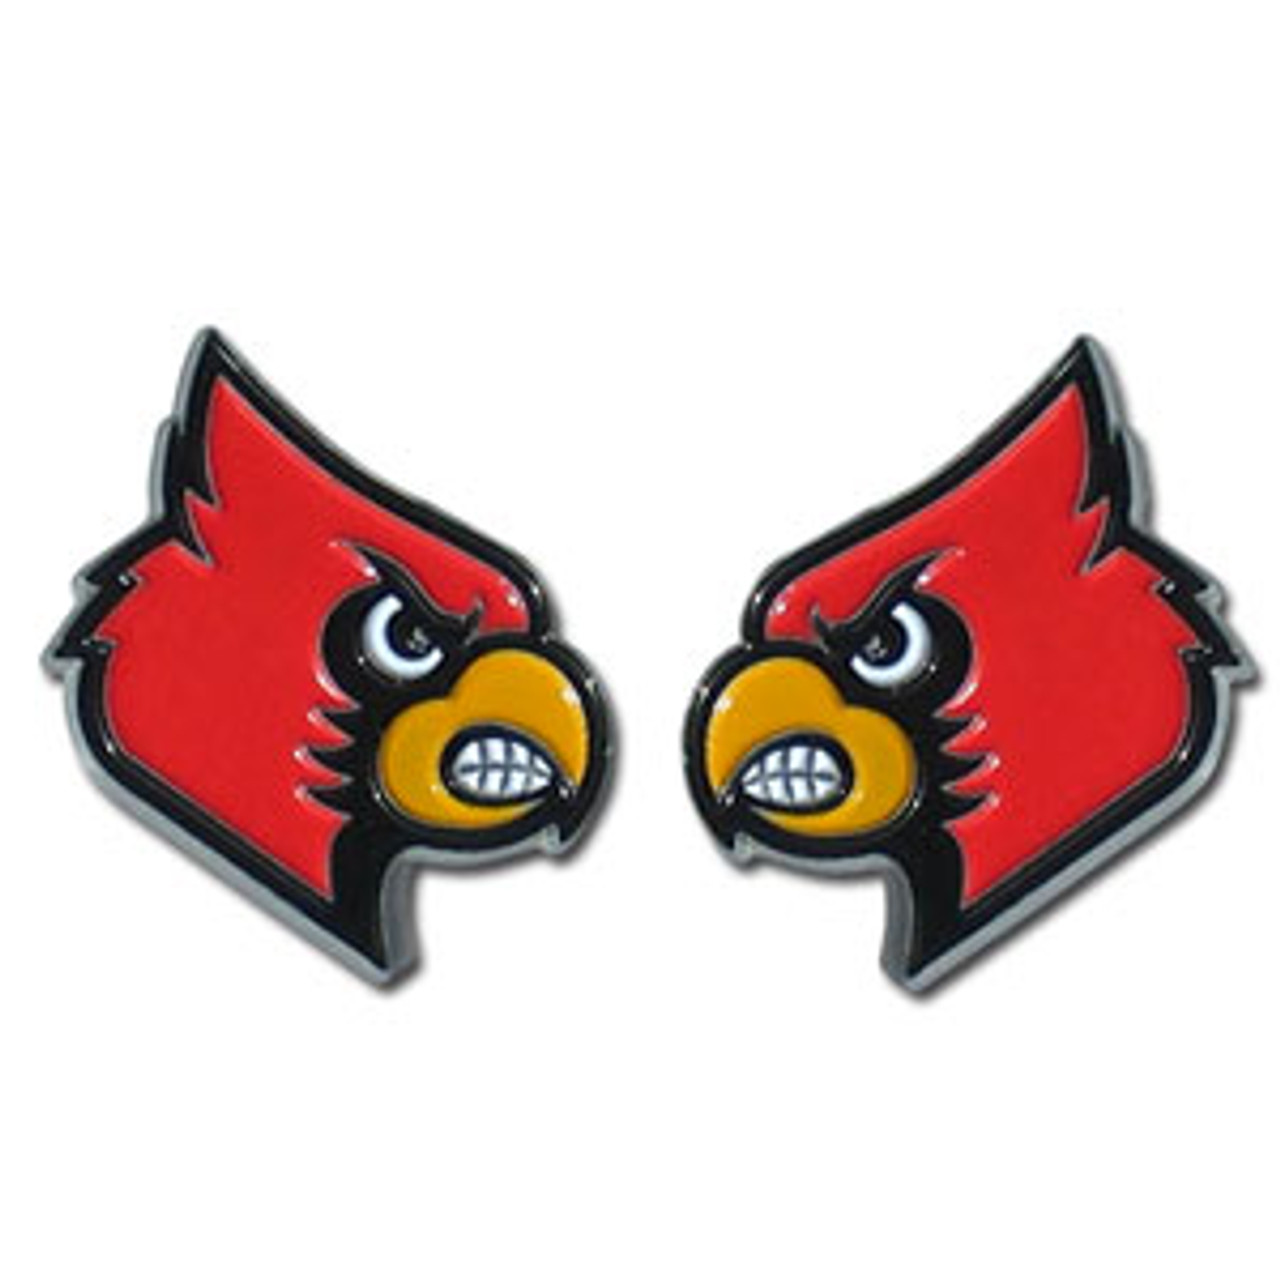  NCAA Louisville Cardinals Stud Earrings : Sports Fan Earrings  : Sports & Outdoors